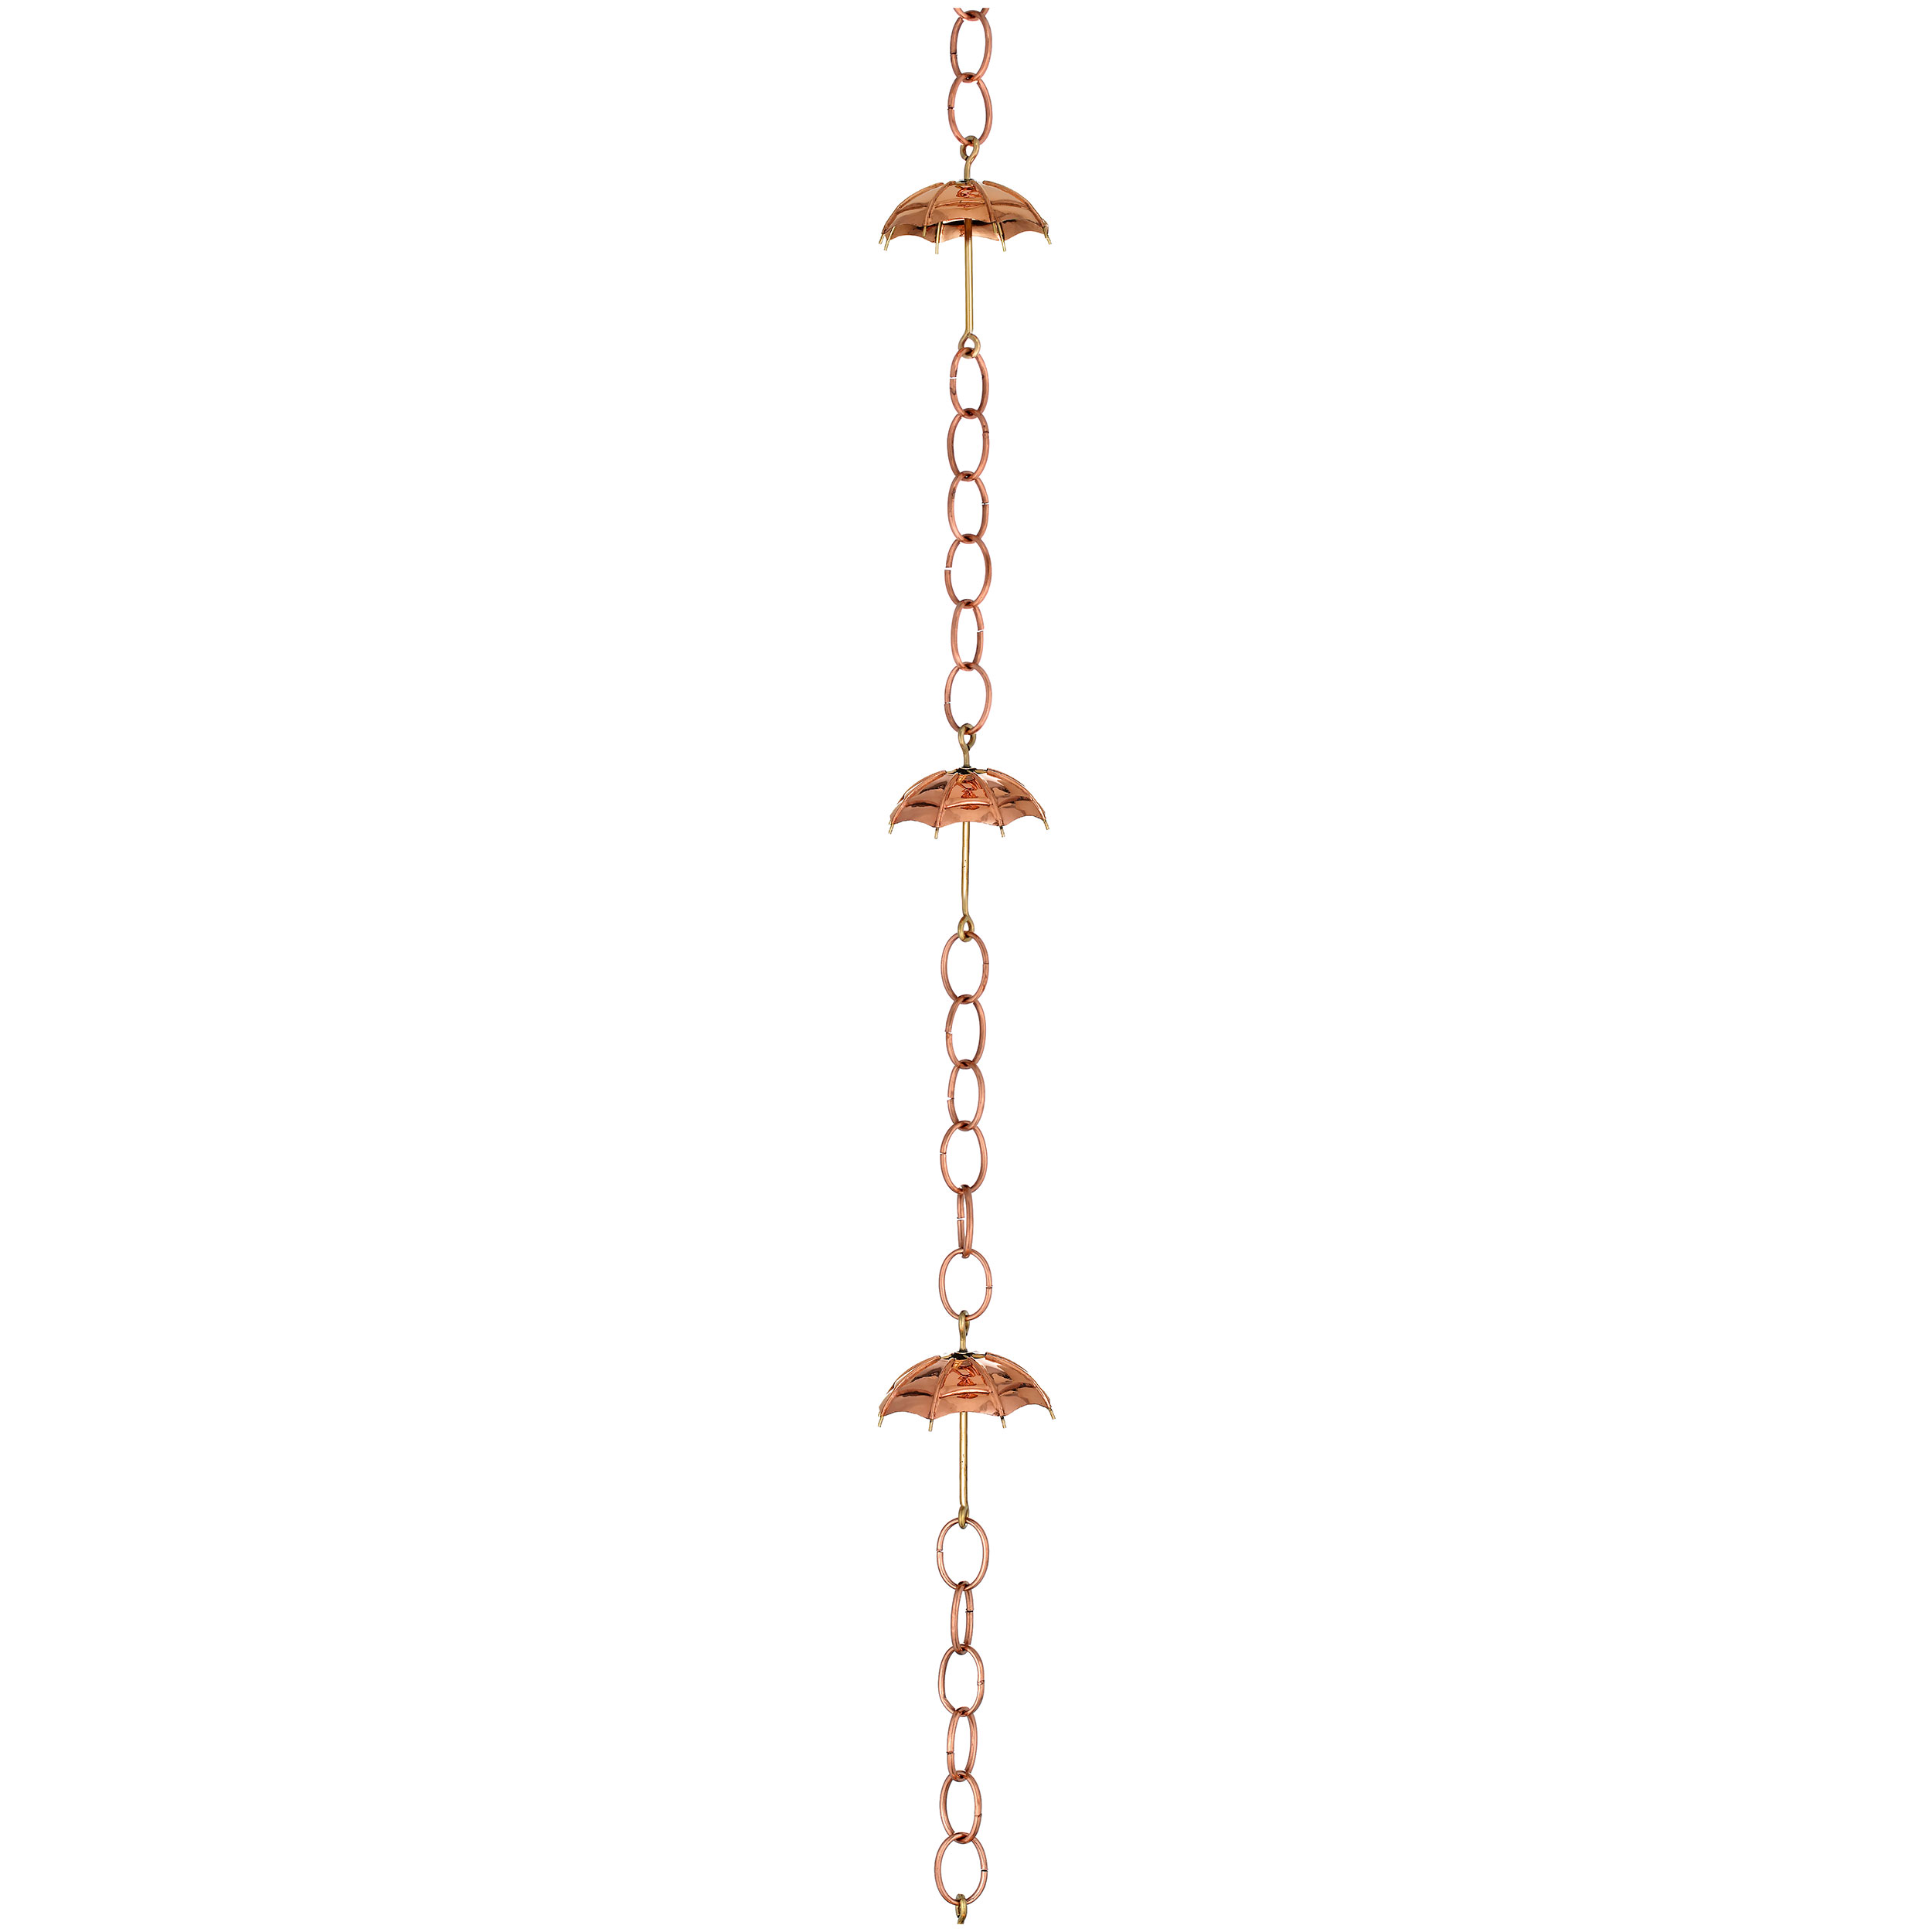 Umbrella Rain Chain, Polished Copper